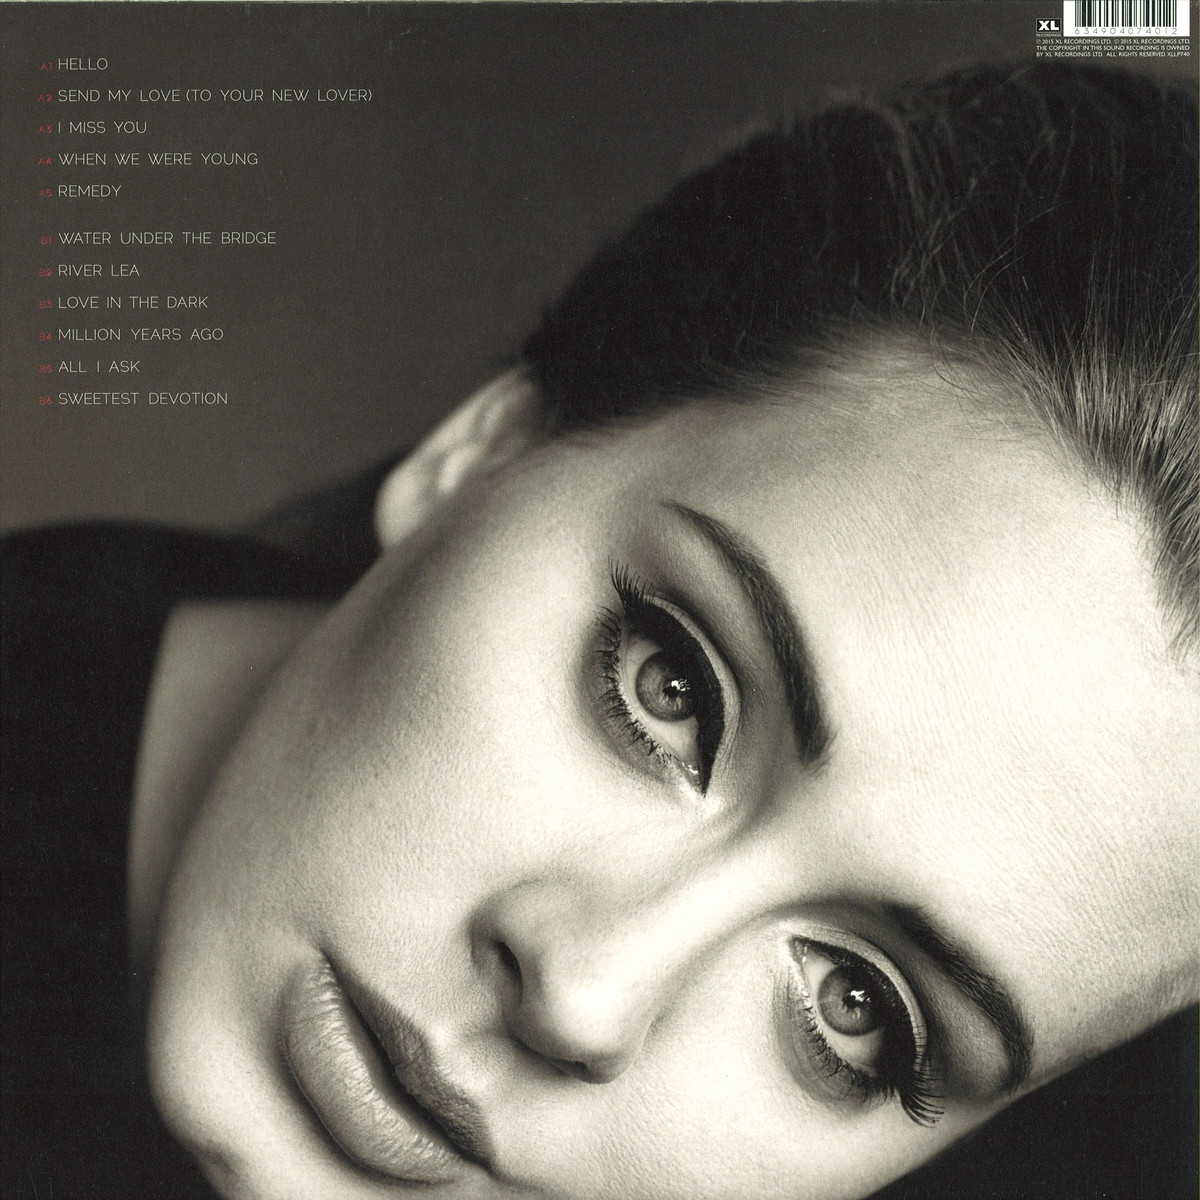 Adele - 25 (Deluxe Edition).rar